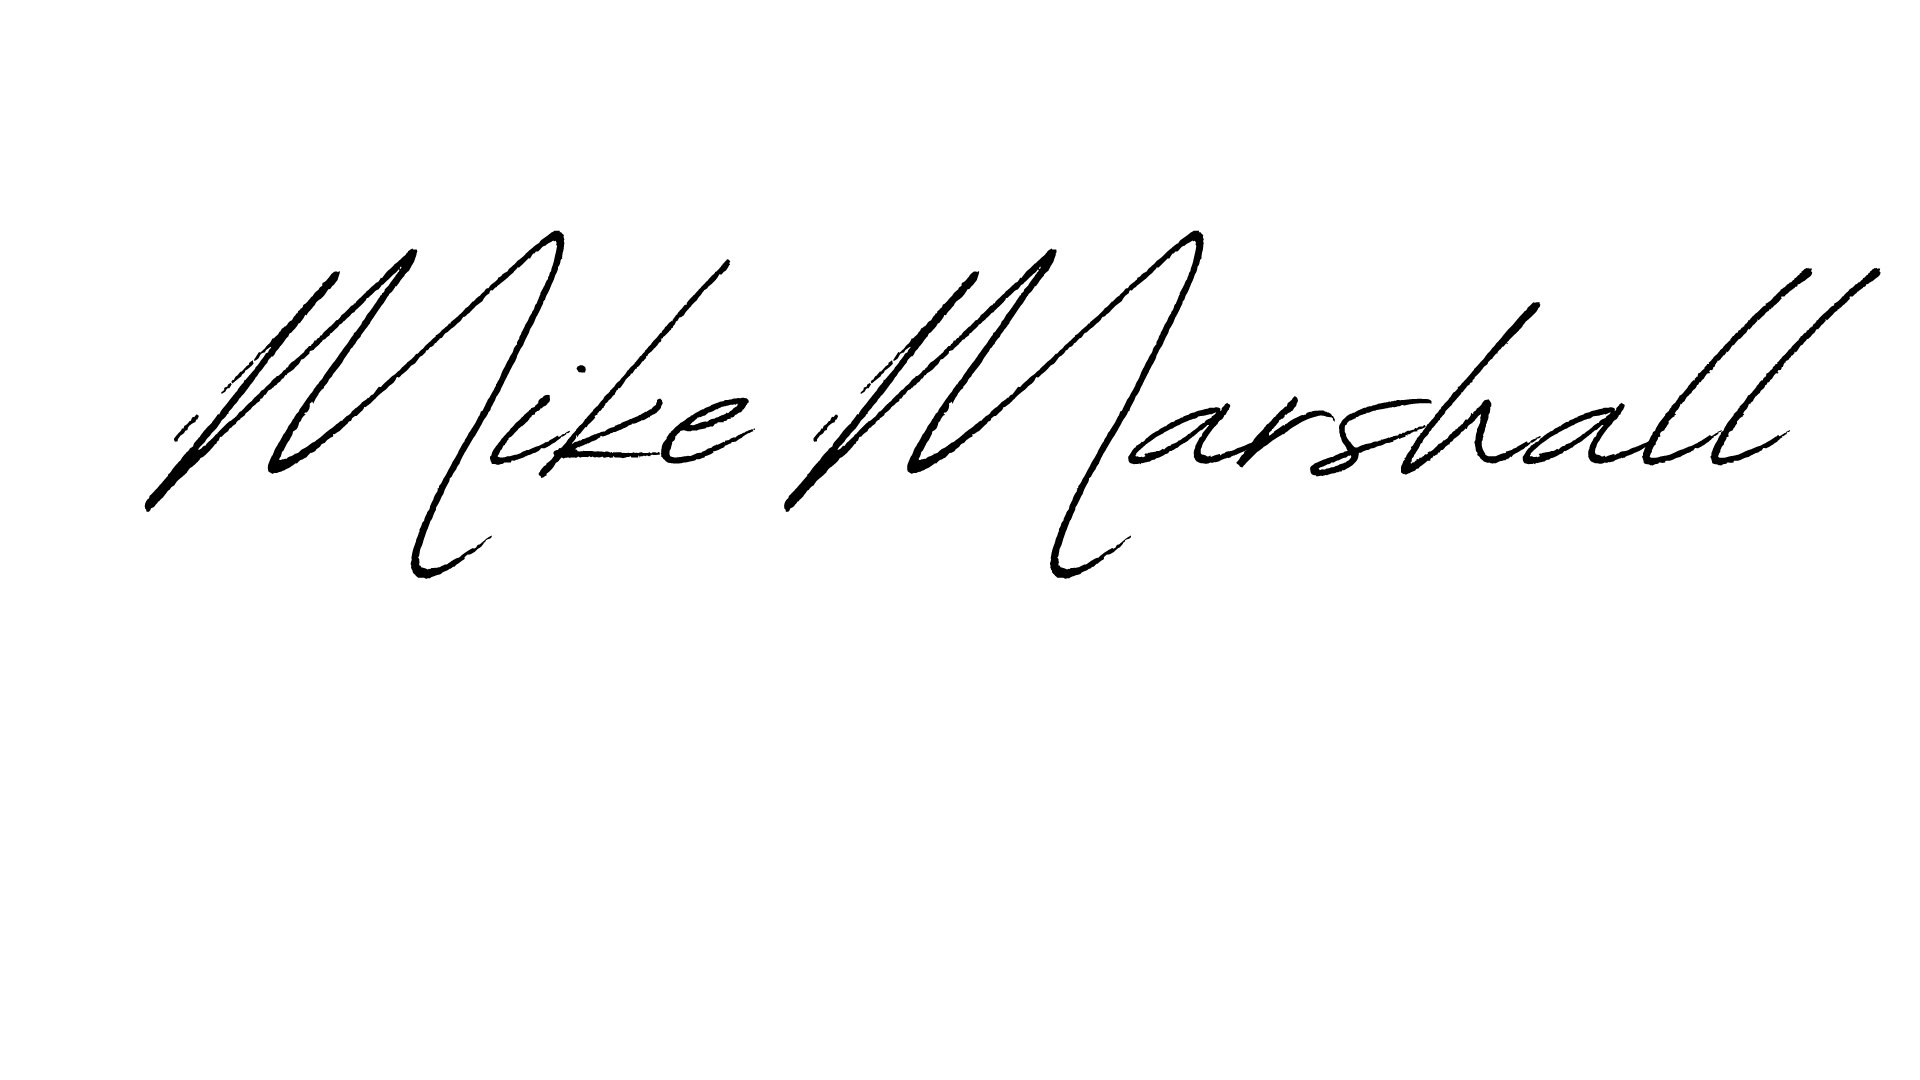 Candidate signature